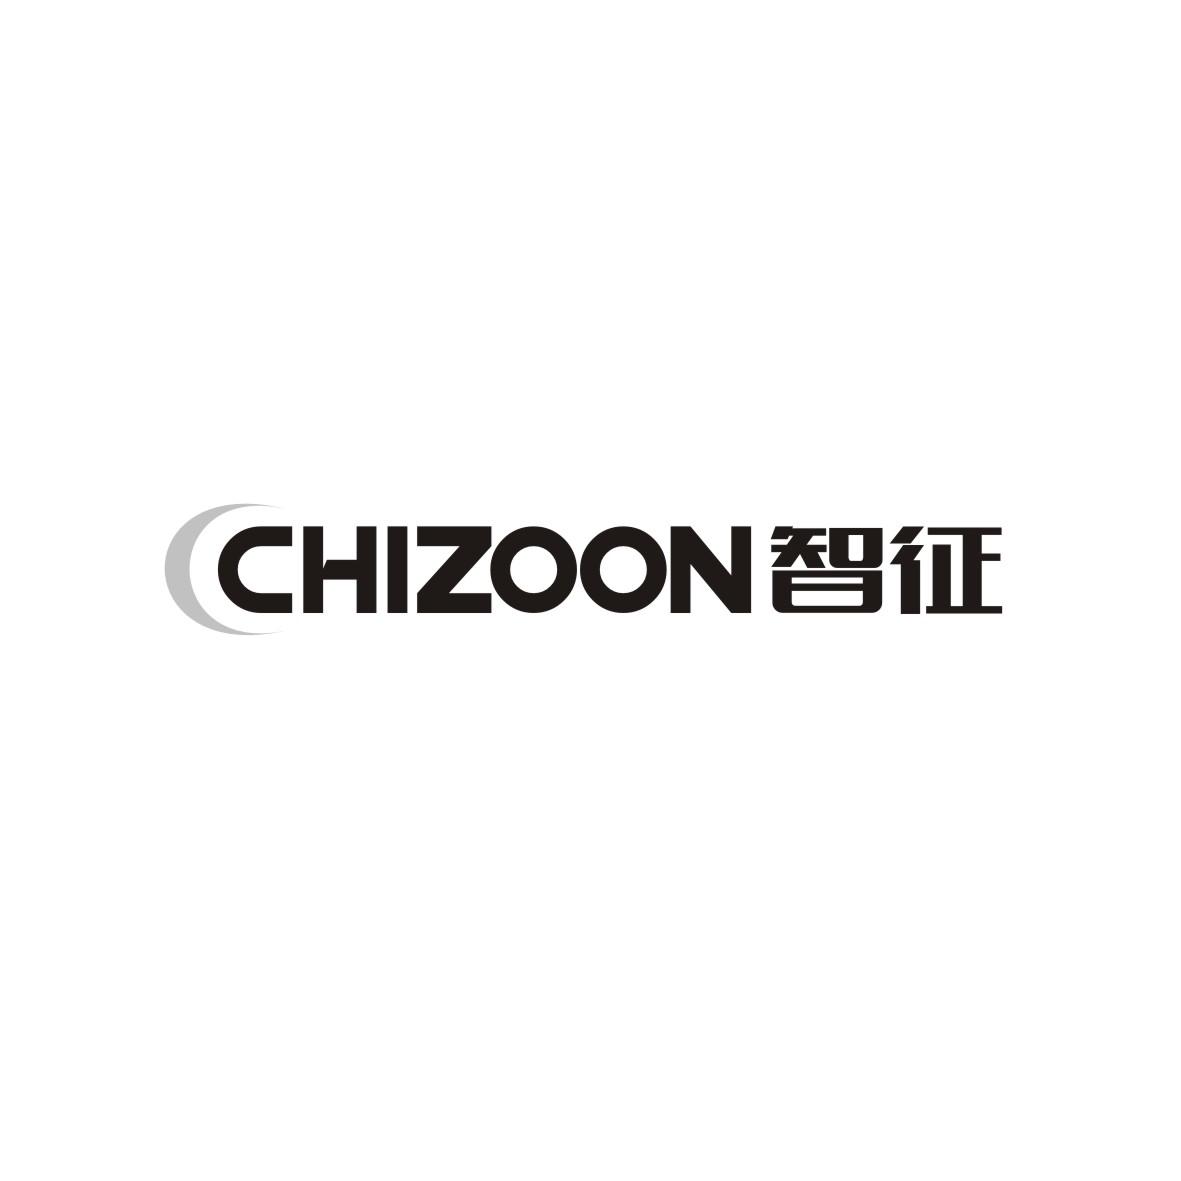  CHIZOON